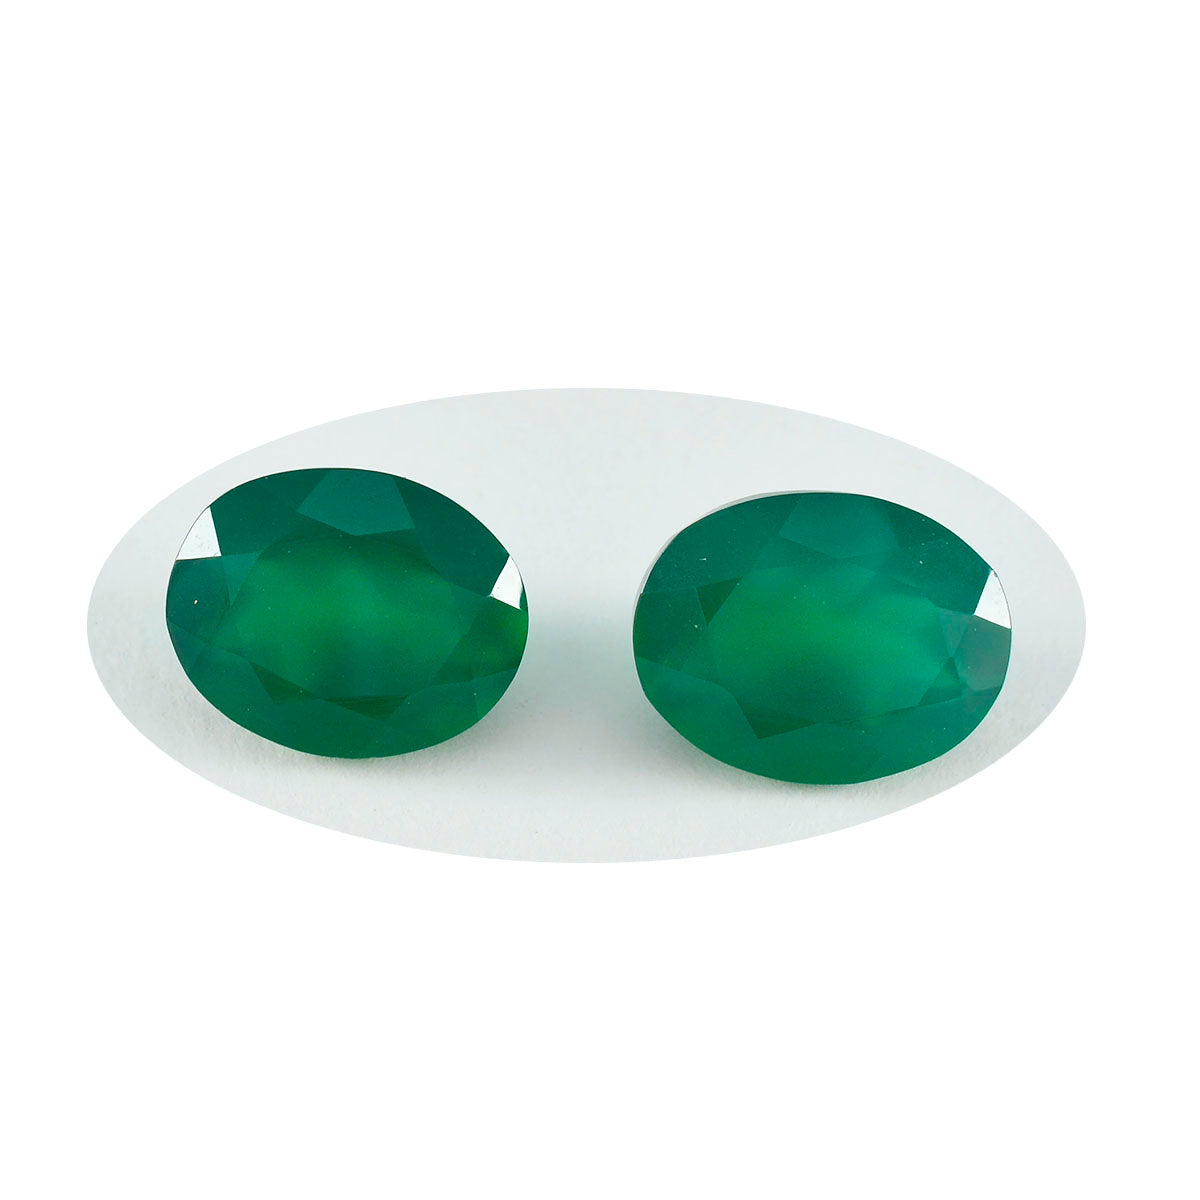 Riyogems 1 Stück echter grüner Onyx, facettiert, 7 x 9 mm, ovale Form, hübscher Qualitäts-Edelstein